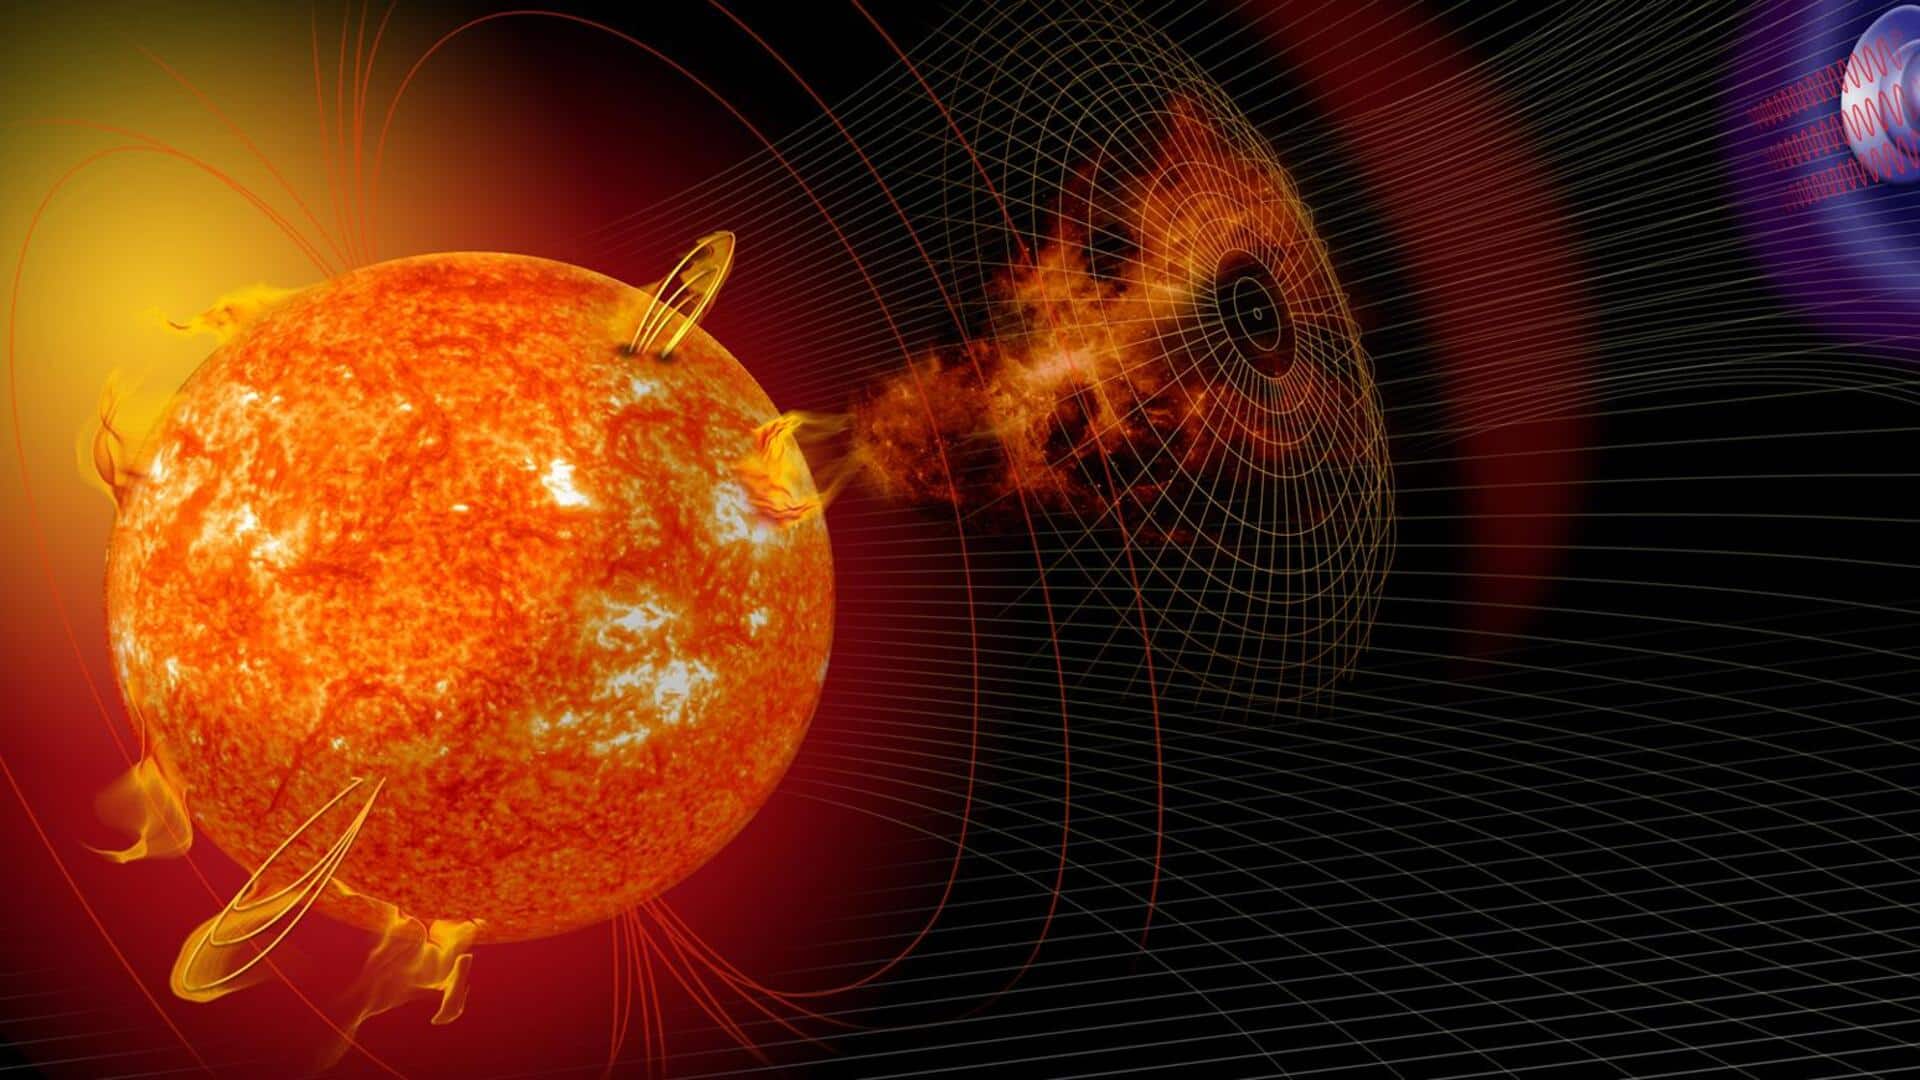 पृथ्वी पर आया G3-श्रेणी का सौर तूफान, दुनिया के कुछ हिस्सों में दिखा इसका प्रभाव